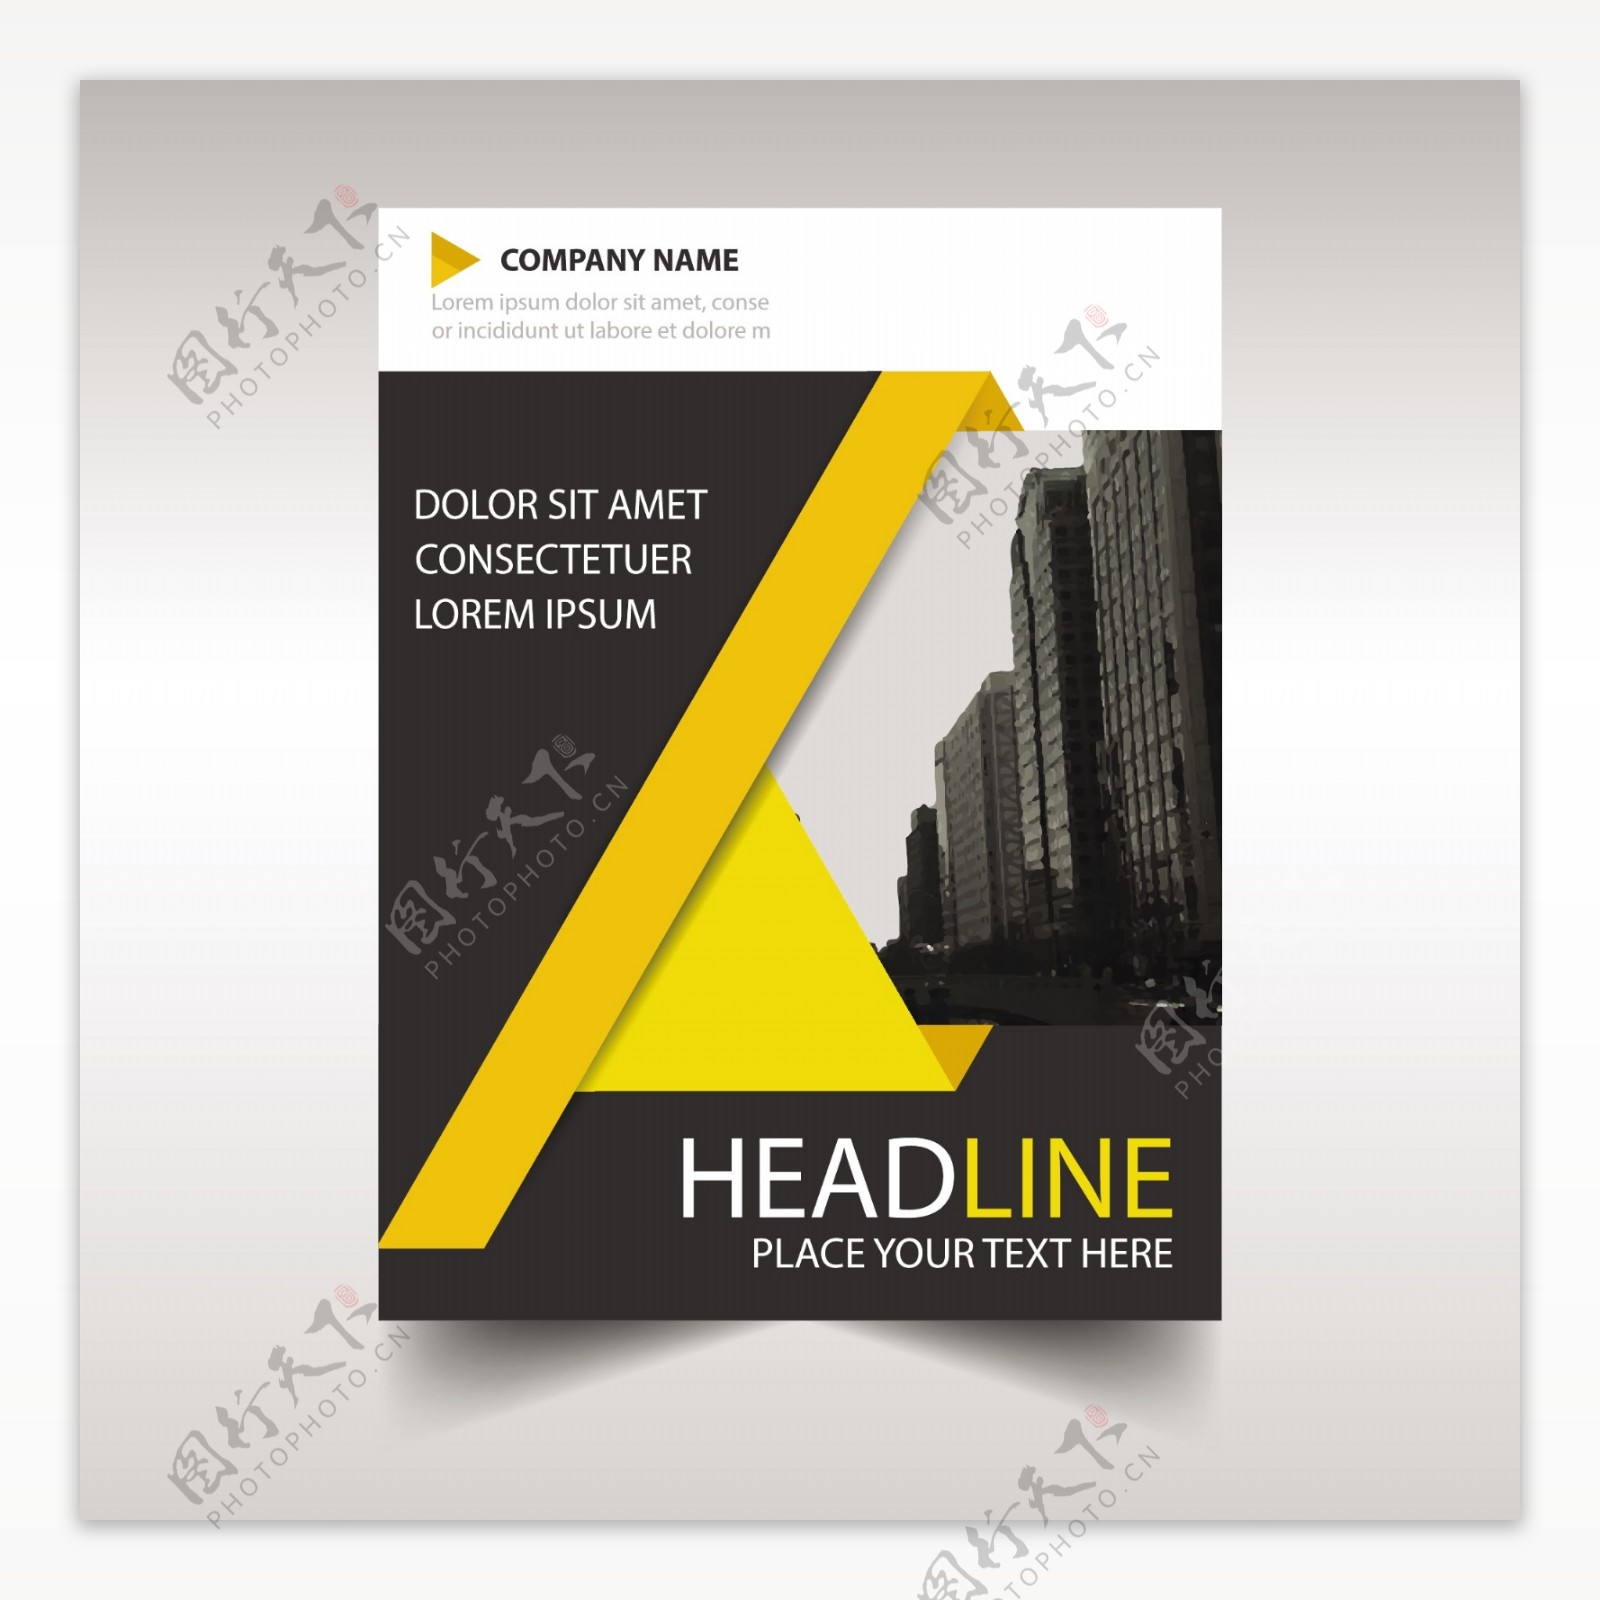 黄色和黑色的年度报告书封面模板